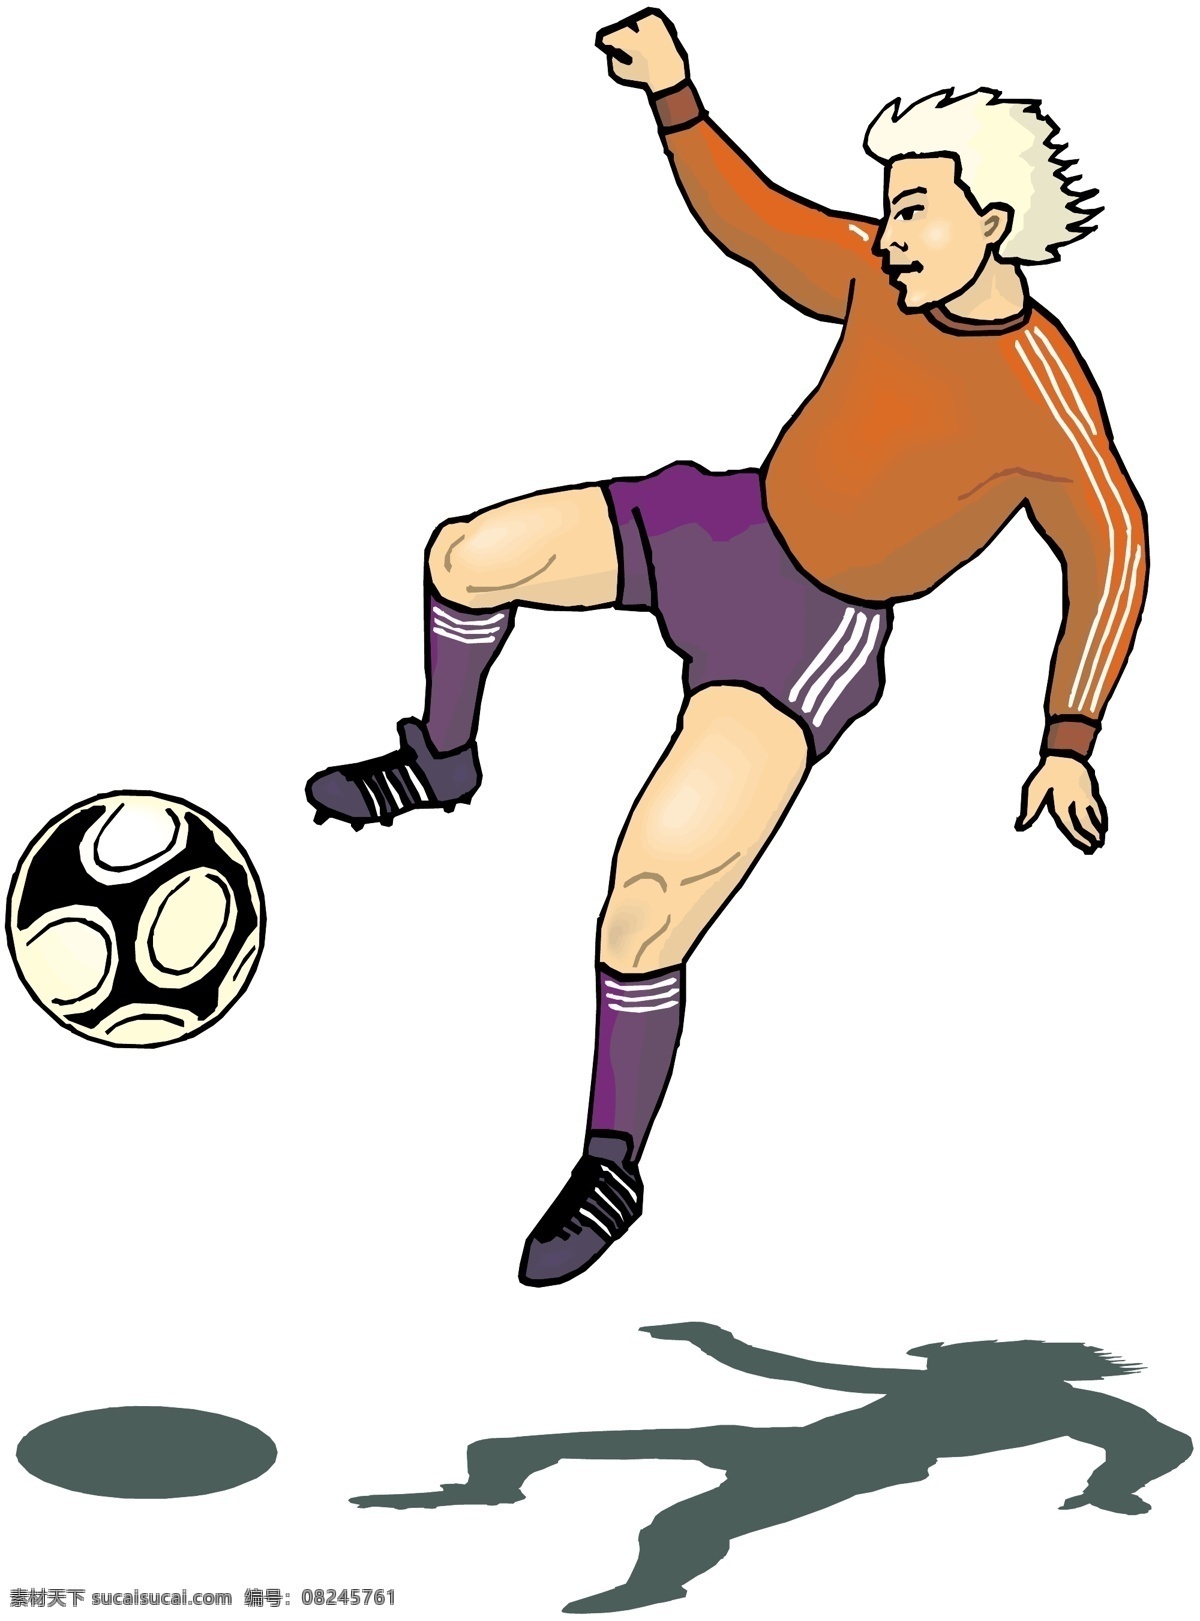 踢足球 足球 足球场 运动 比赛 球类运动 运动员 卡通人物 守门员 世界杯 分层